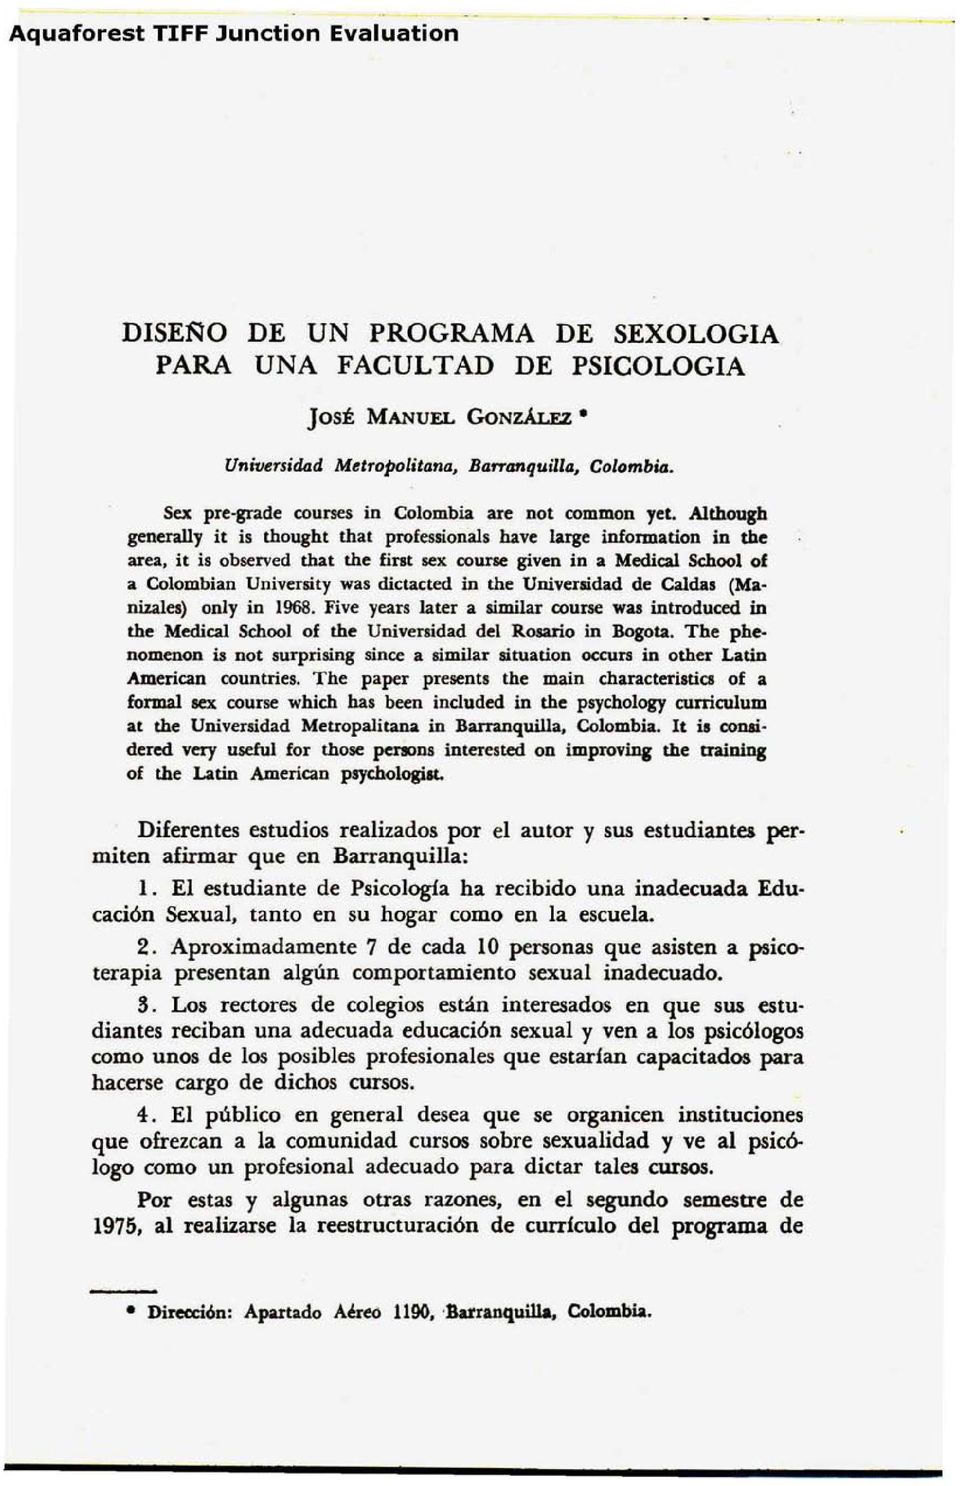 the Universidad de Caldas (Manizales) only in 1968. Five years Iater a similar course was introduced in the Medical School of the Universidad del Rosario in Bogota.